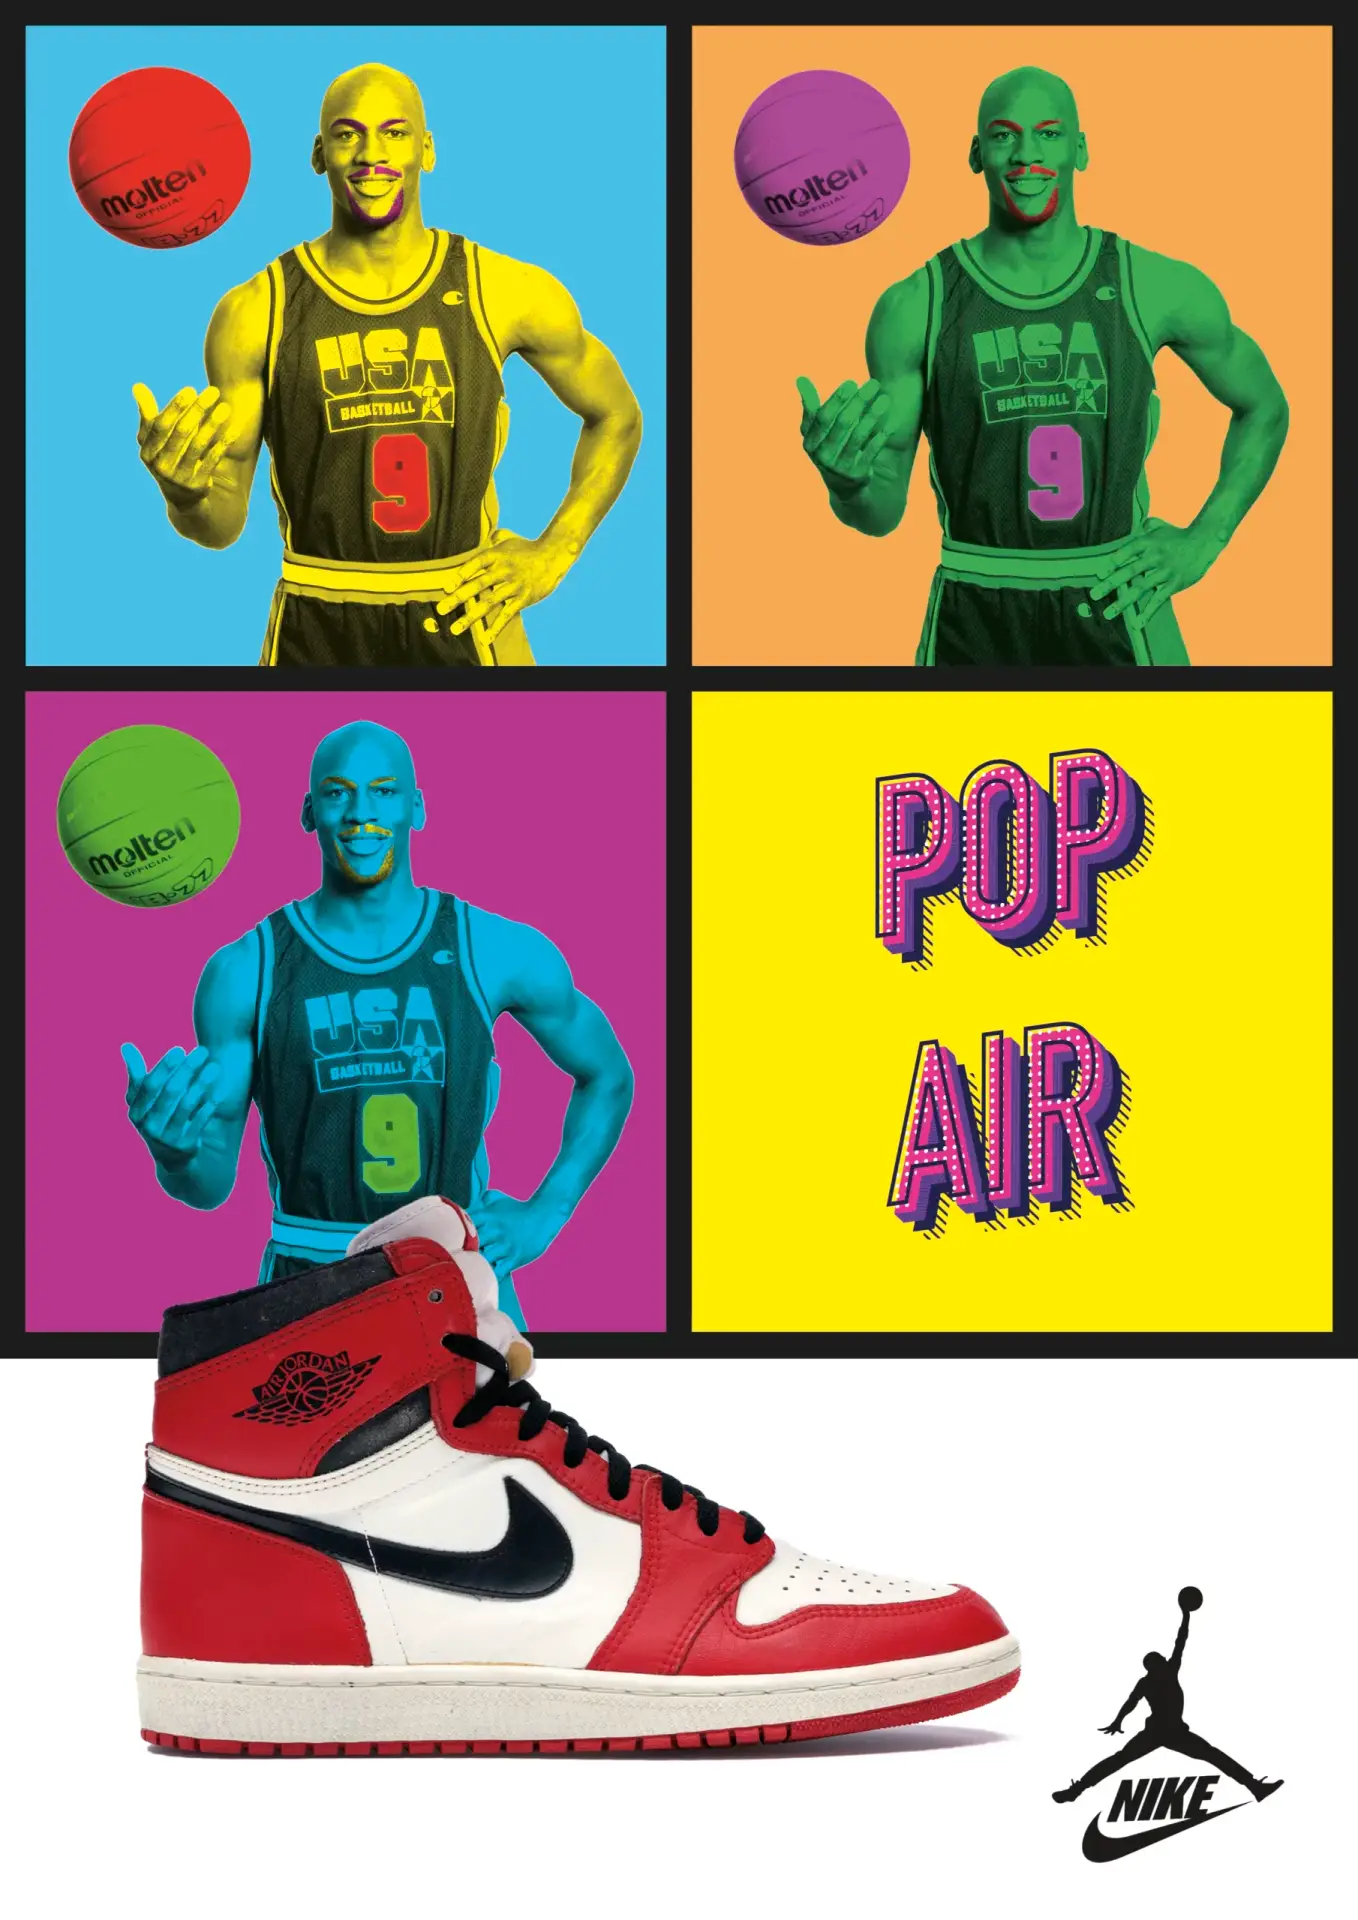 Annonce-presse fictive pour les baskets Air Jordan de Nike dans un style pop art.